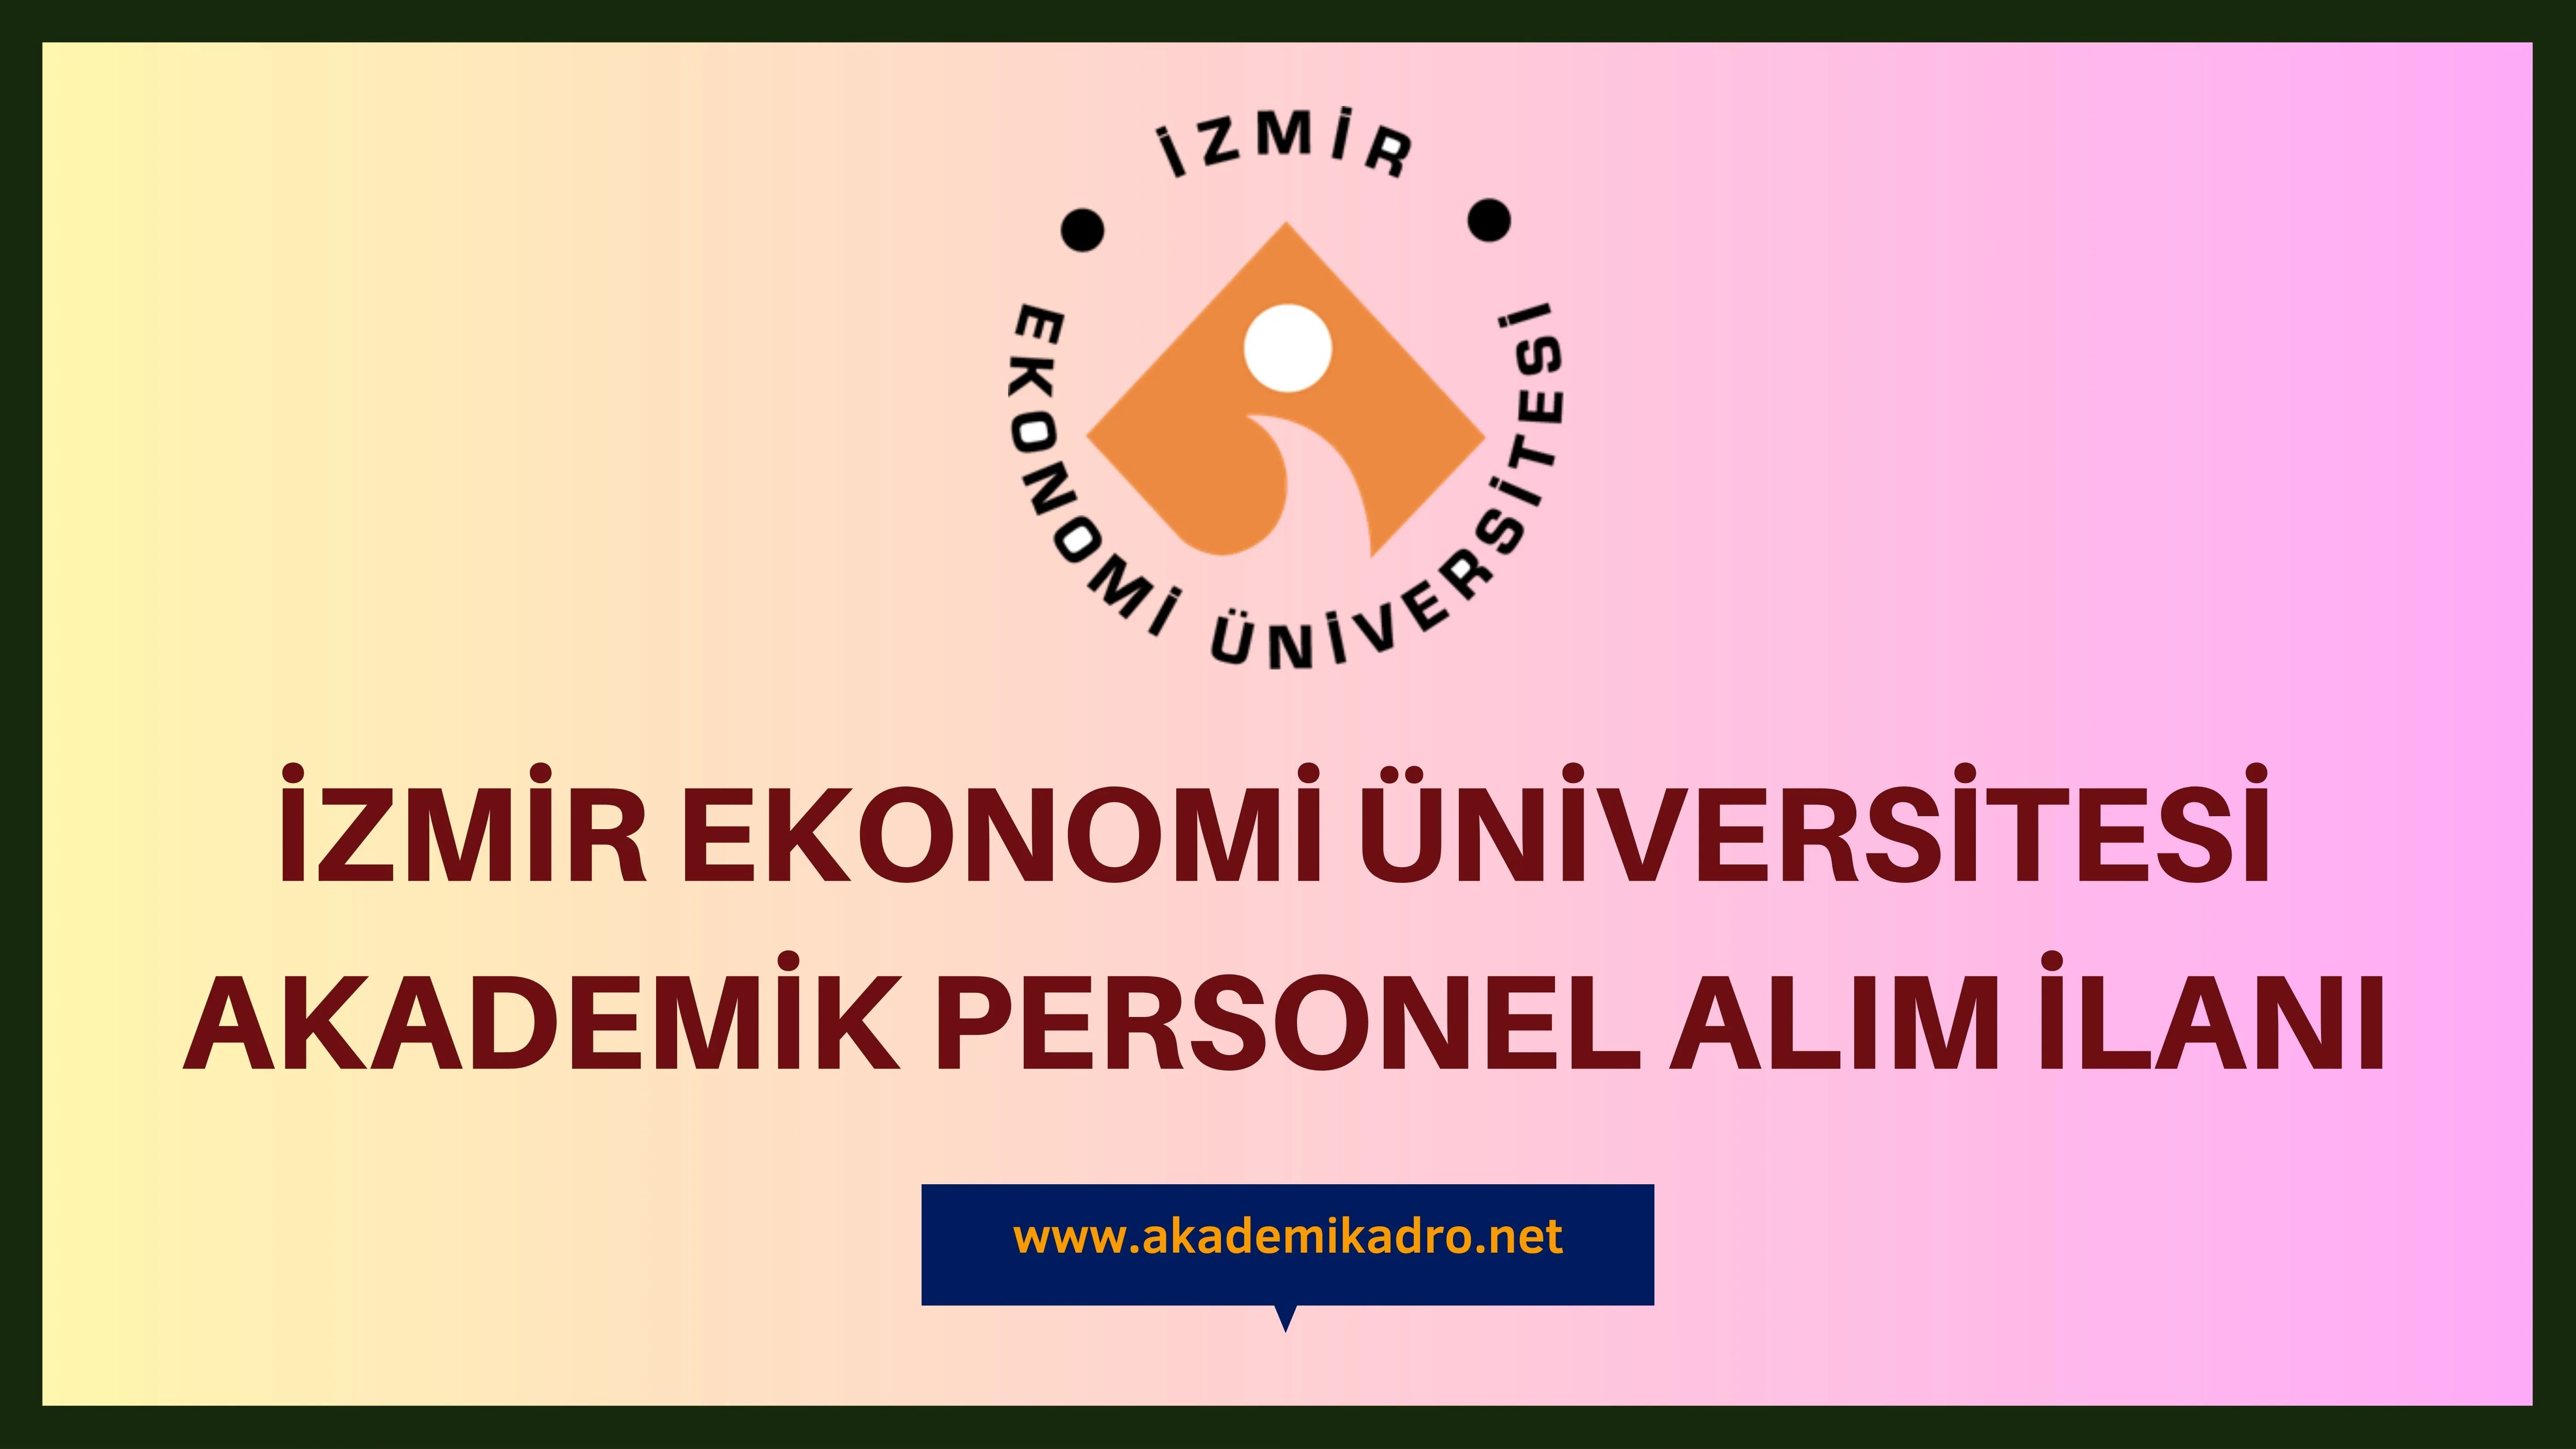 İzmir Ekonomi Üniversitesi çeşitli alanlarda 13 akademik personel alacak.